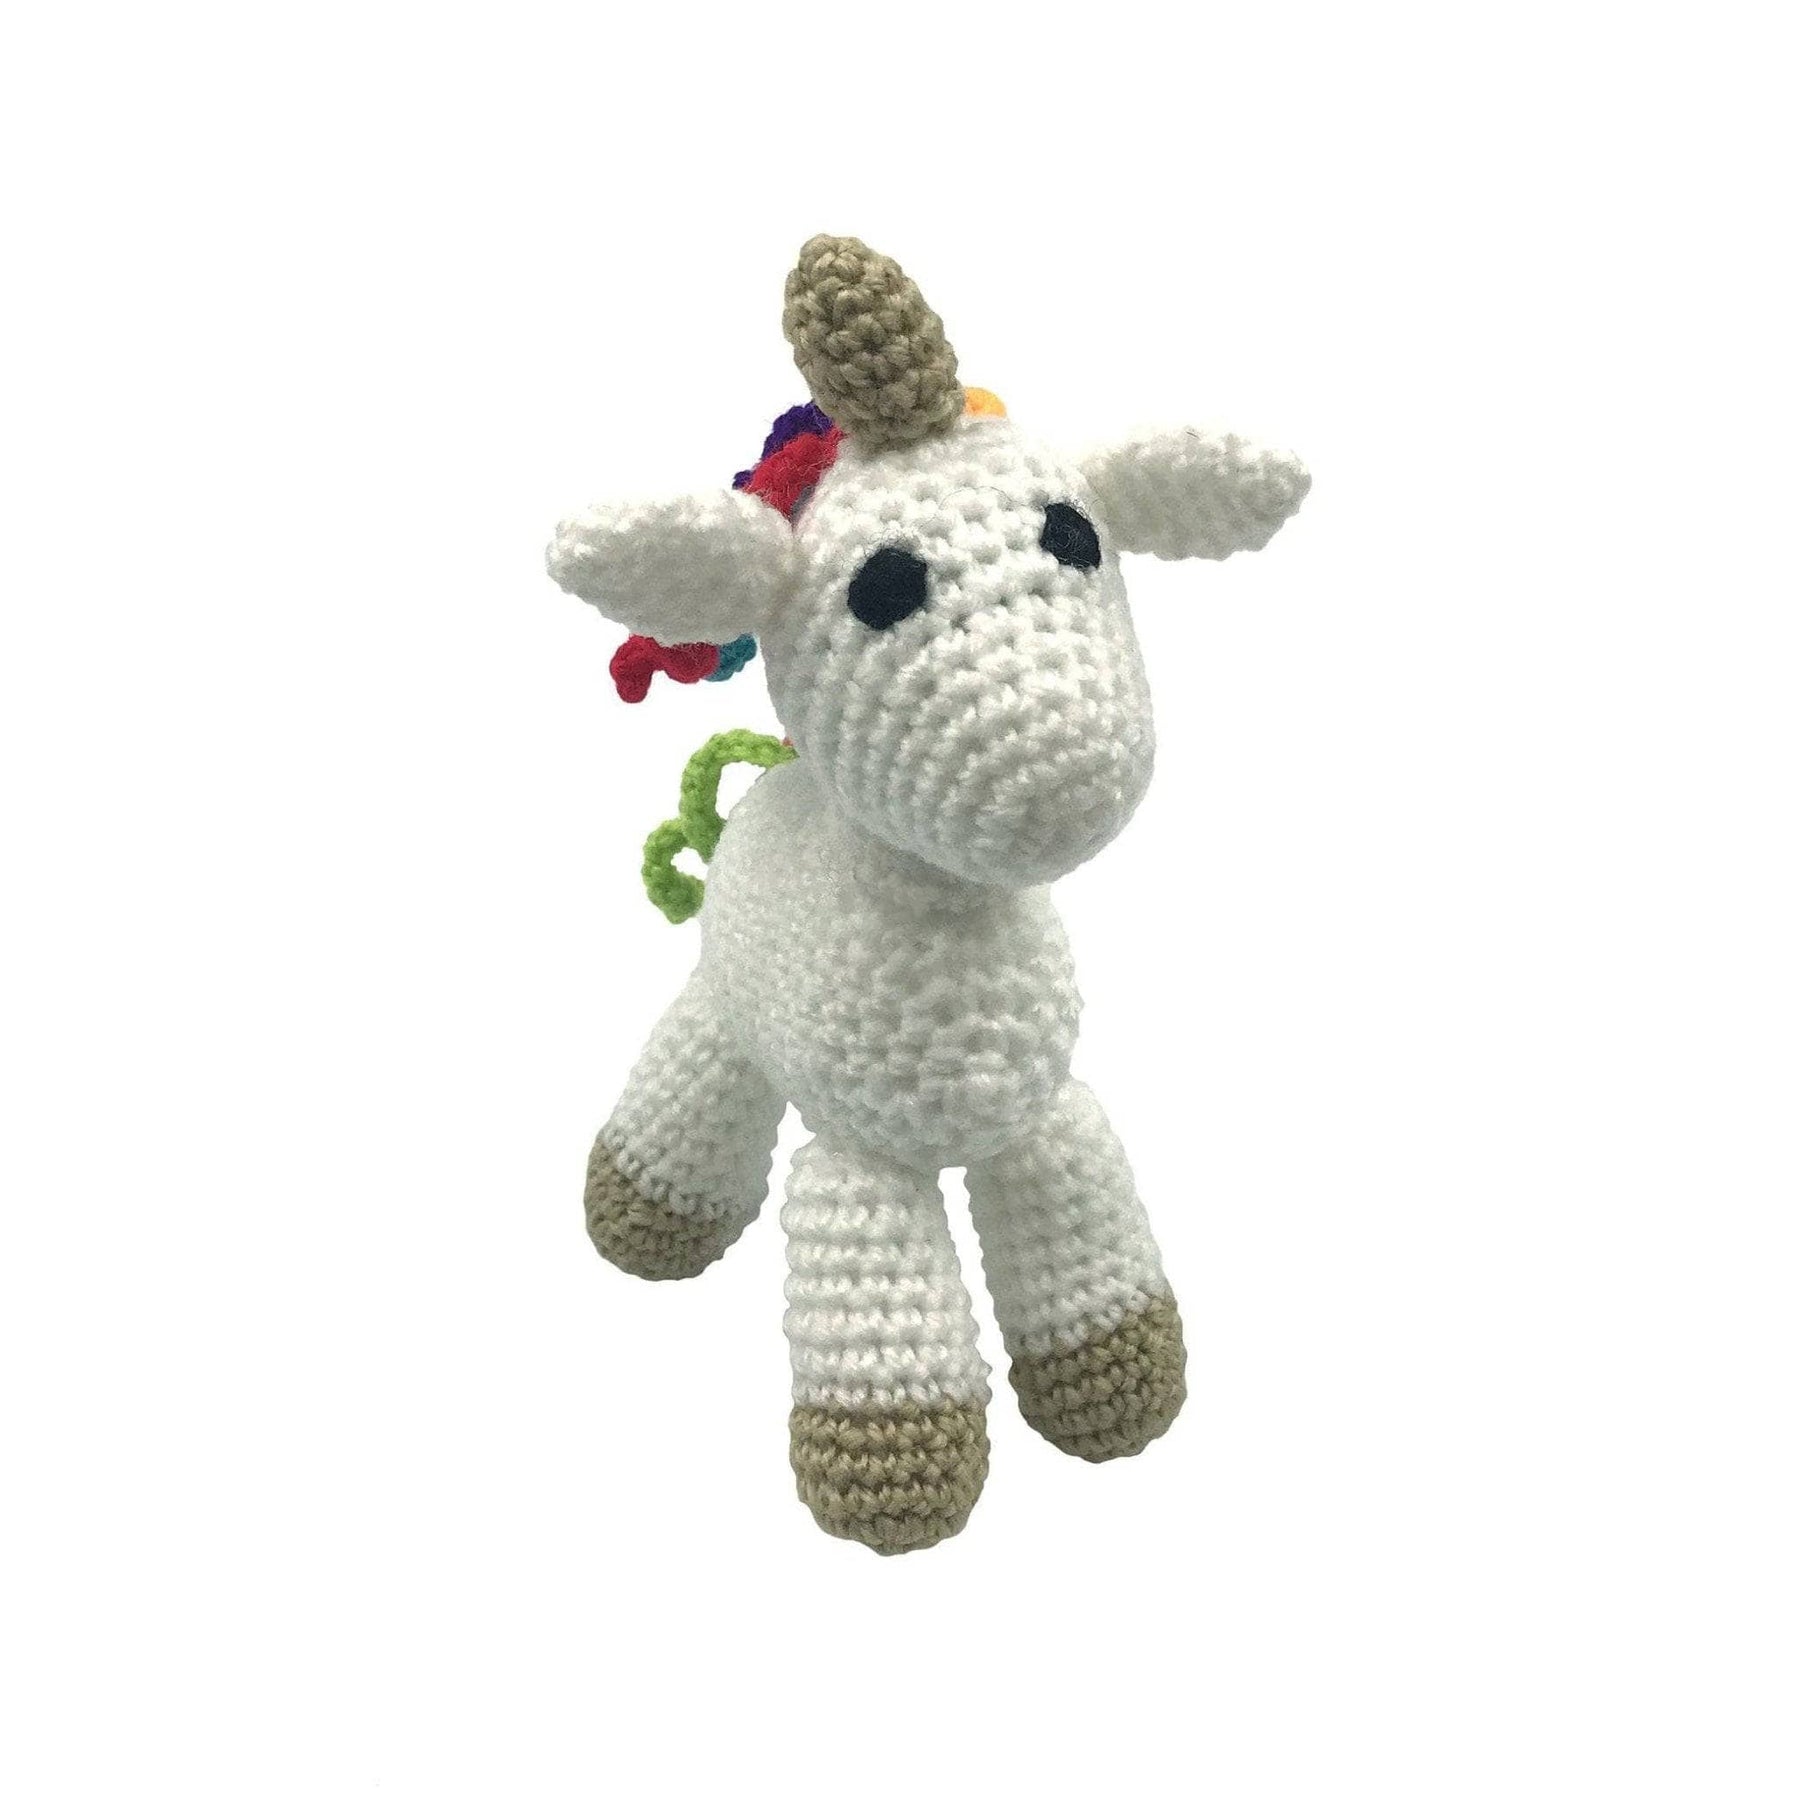 POLYESTER FIBER CROCHET Stuffed Animal Kit Yarn Knitting Kits Adults Kids  $17.08 - PicClick AU